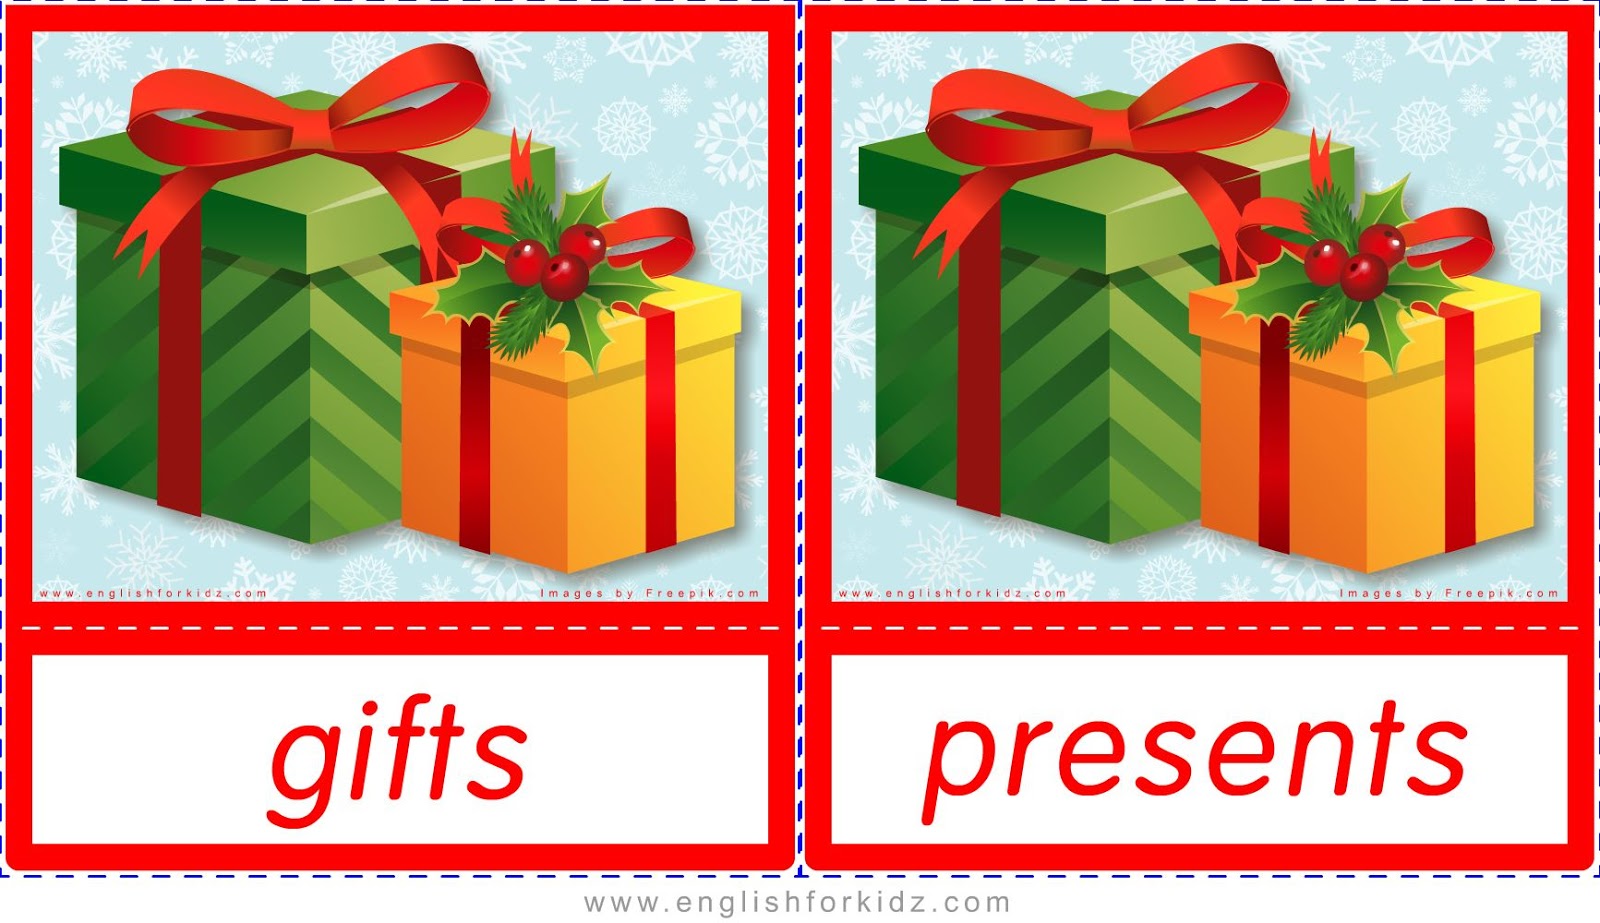 Presents post. Новогодний подарок рисунок. Карточки для подарков. Подарок на английском языке. Картинка английский в подарок.